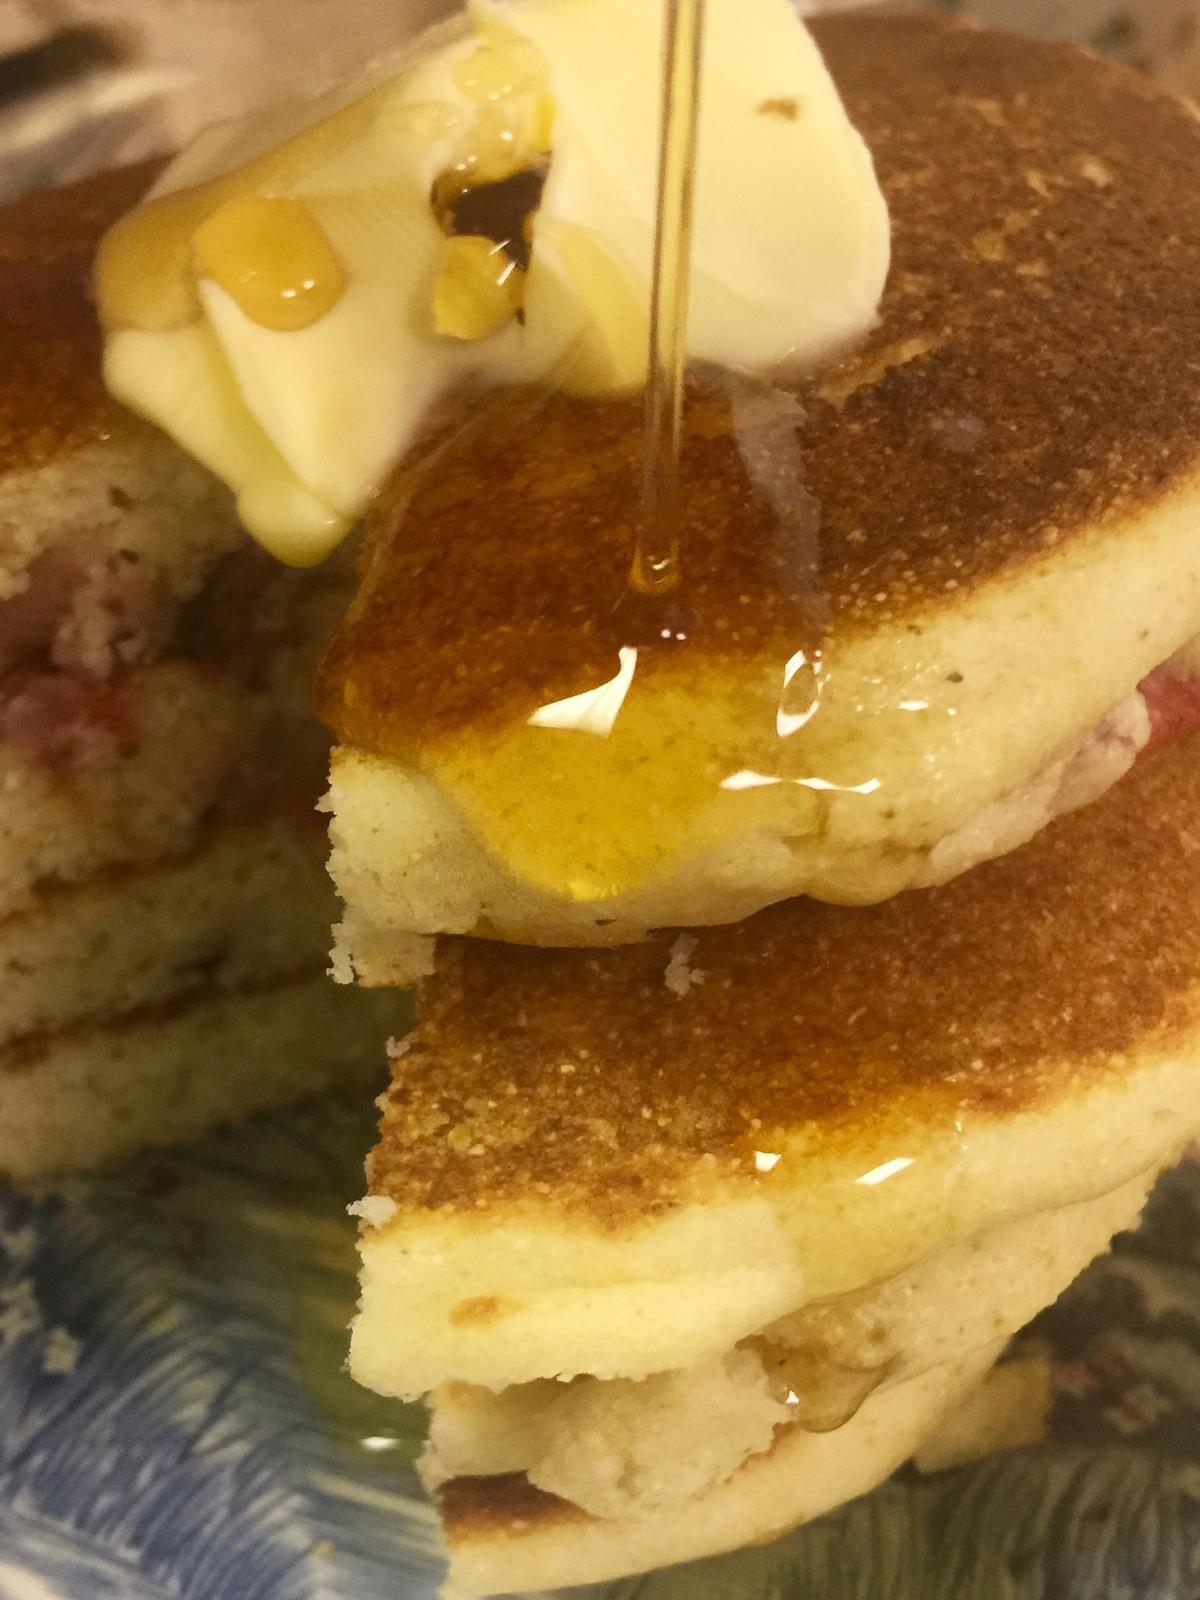 The Charred Oaks Inn serves up bourbon hotcakes for breakfast. (Charred Oaks Inn/TNS)